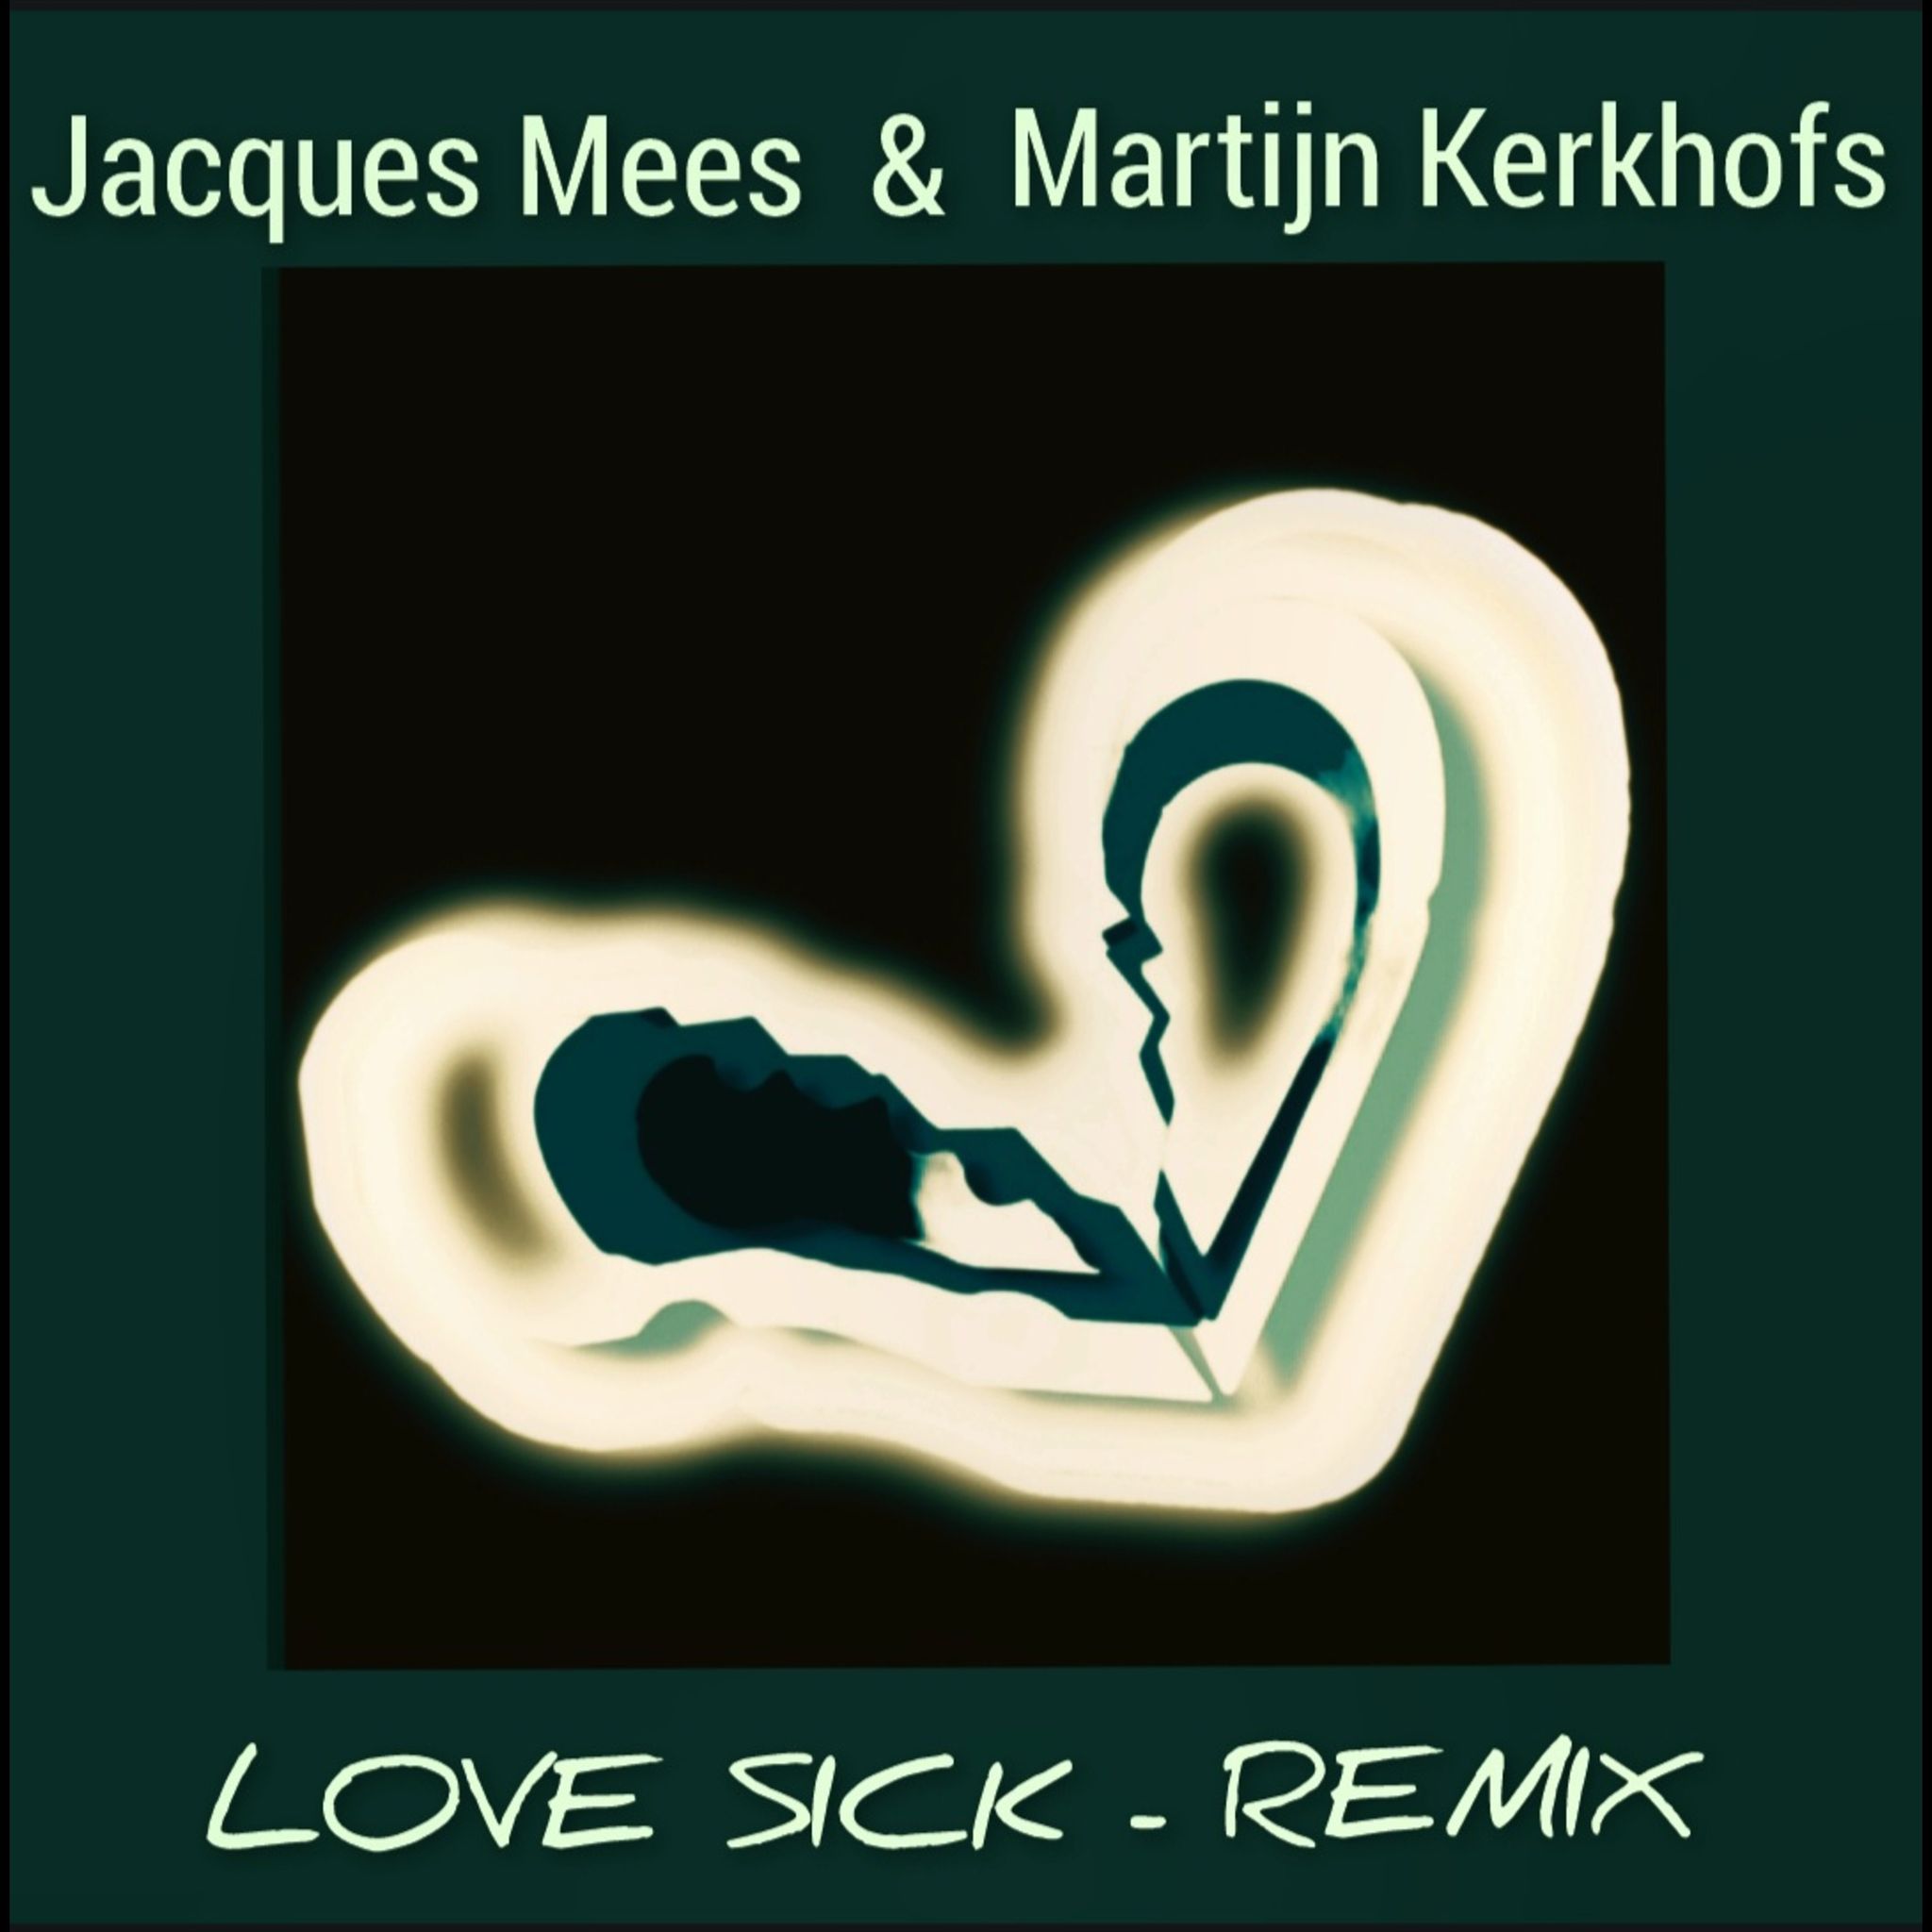 Jacques Mees & Martijn Kerkhofs - Love Sick - Remix